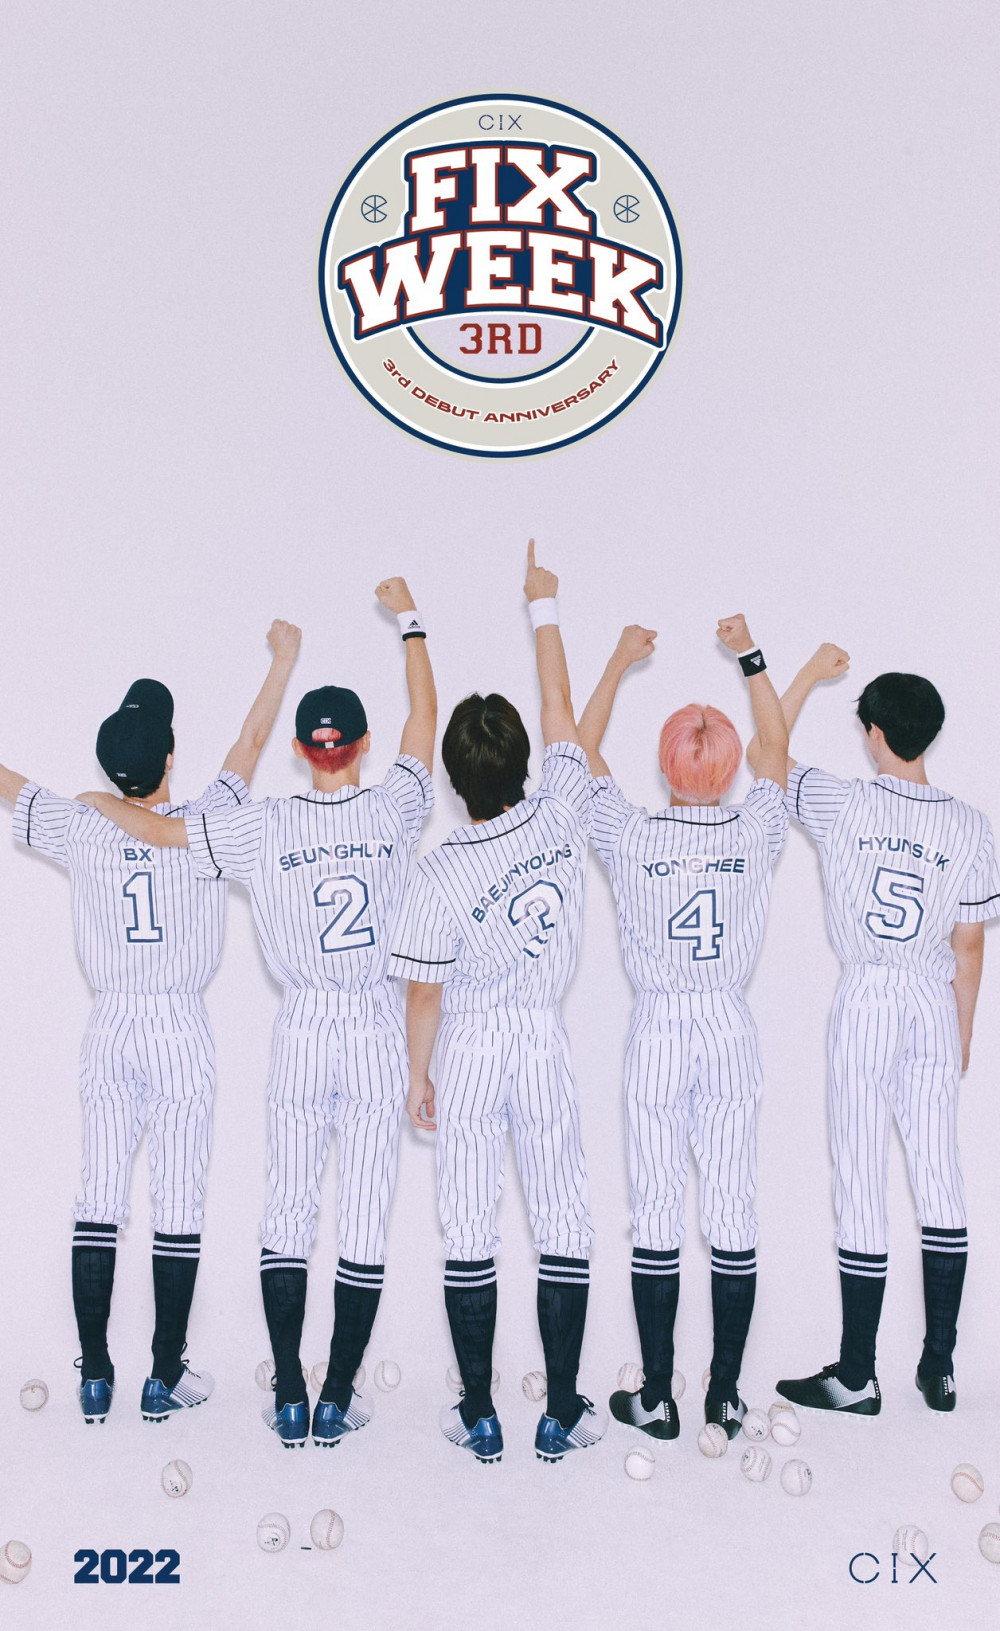 CIX перевоплощаются в бейсболистов на концепт-фото для мероприятий годовщины "2022 Fix Week"